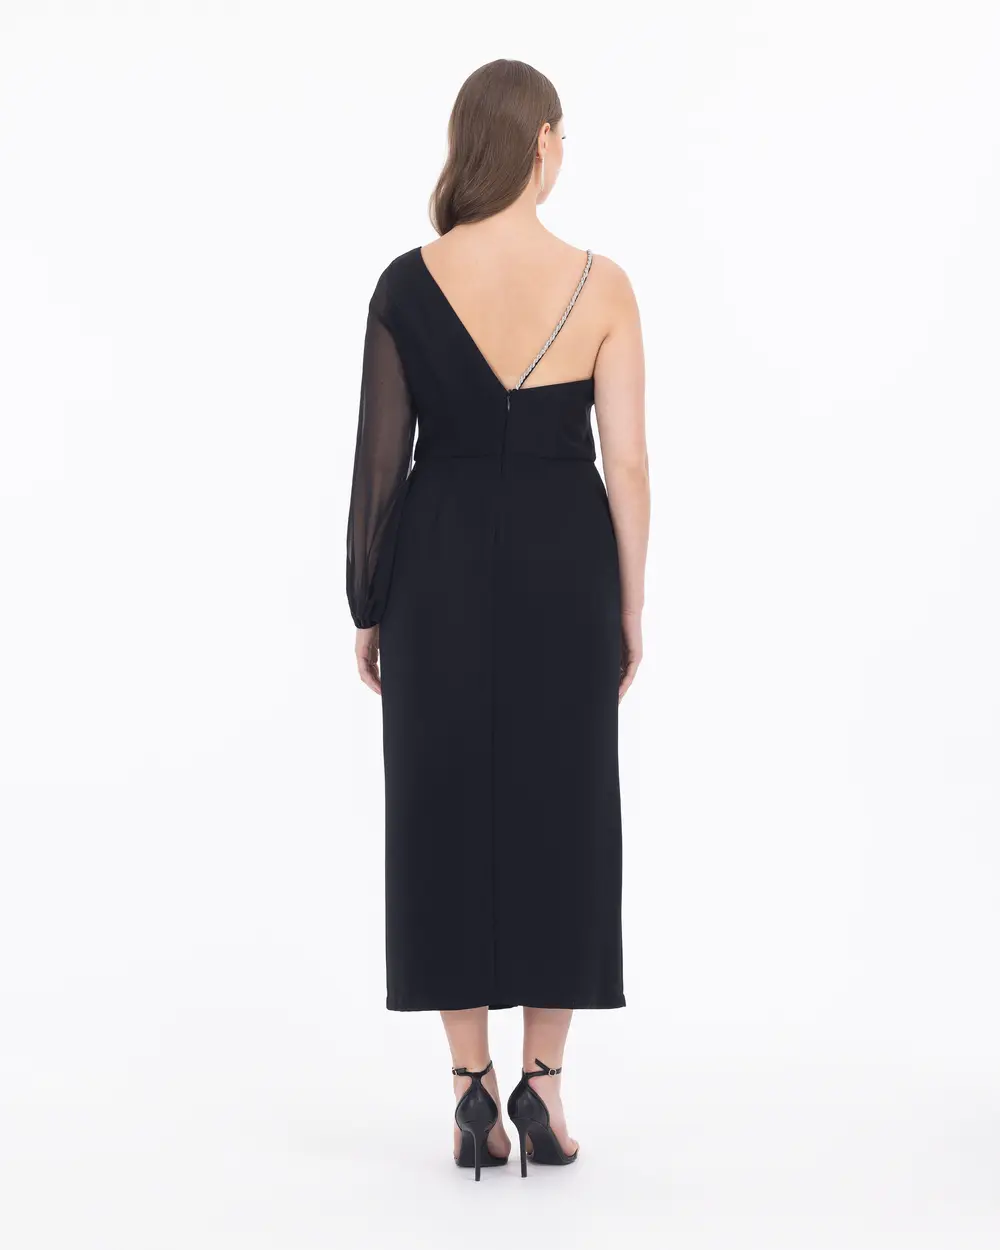 Slit Detailed One Shoulder Midi Length Evening Dress